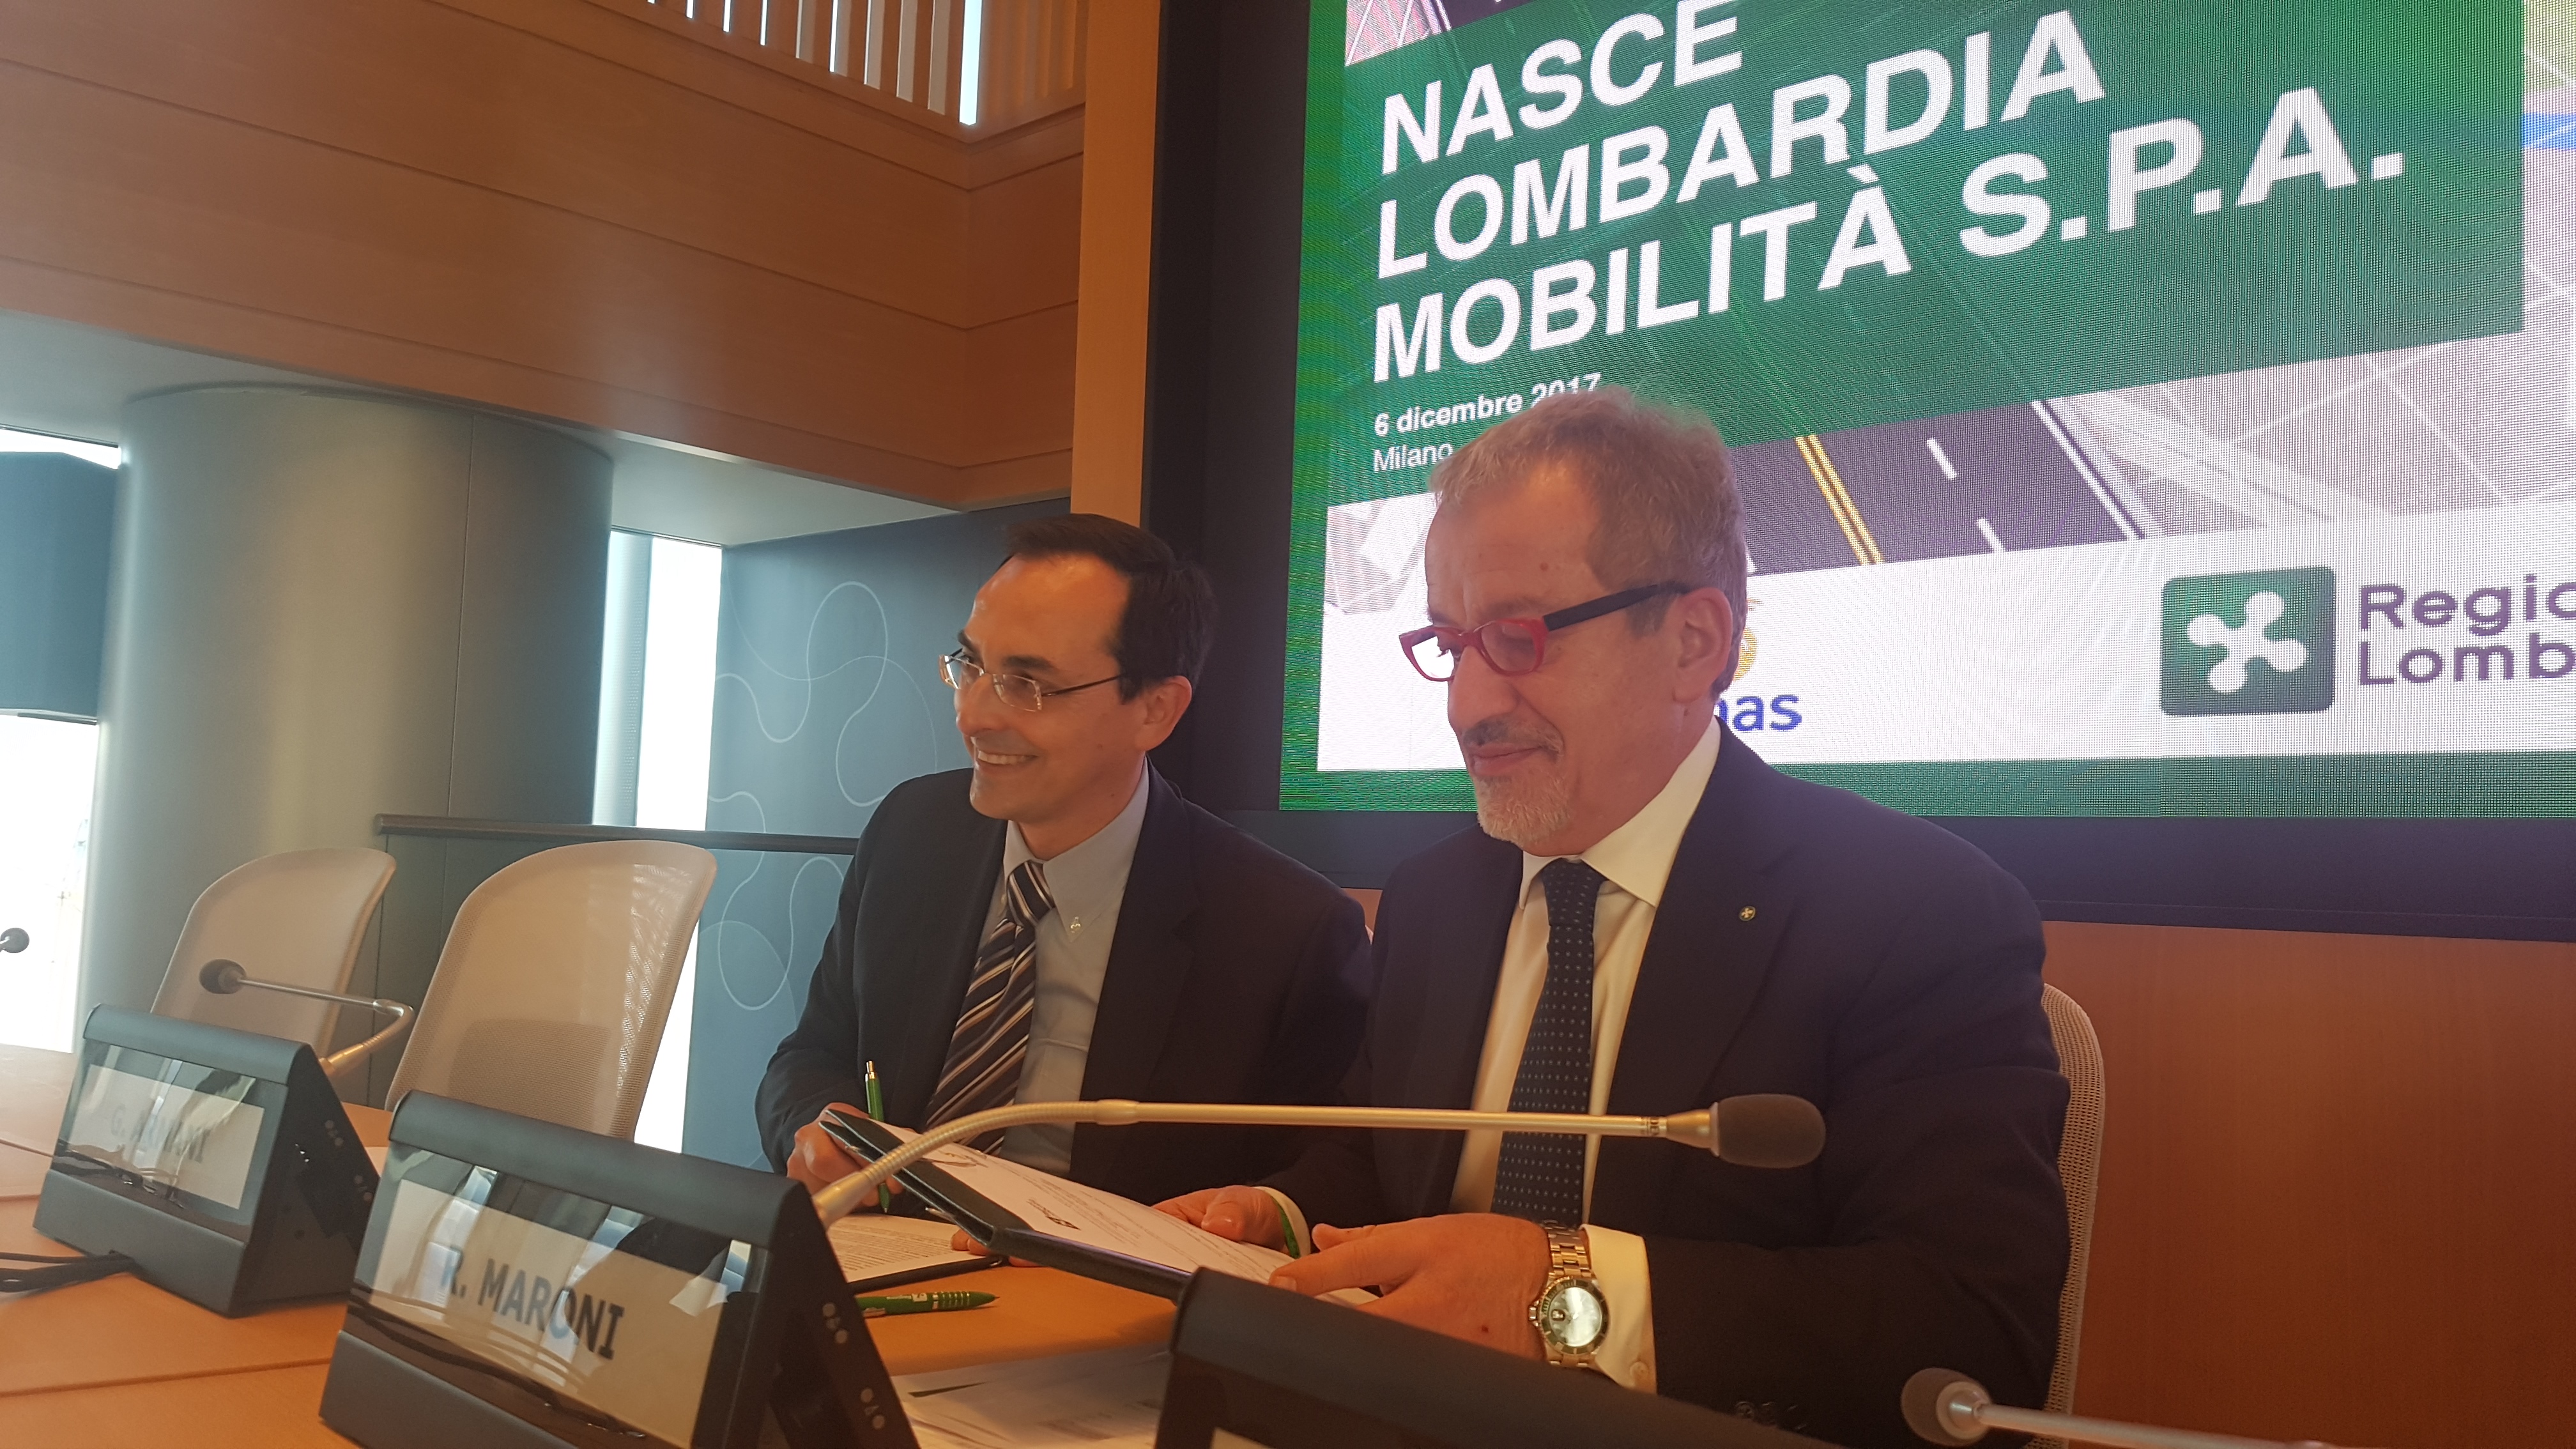 Al via la costituzione di Lombardia Mobilità Spa - Gianni Vittorio Armani e Roberto Maroni firmano il protocollo d'intesa